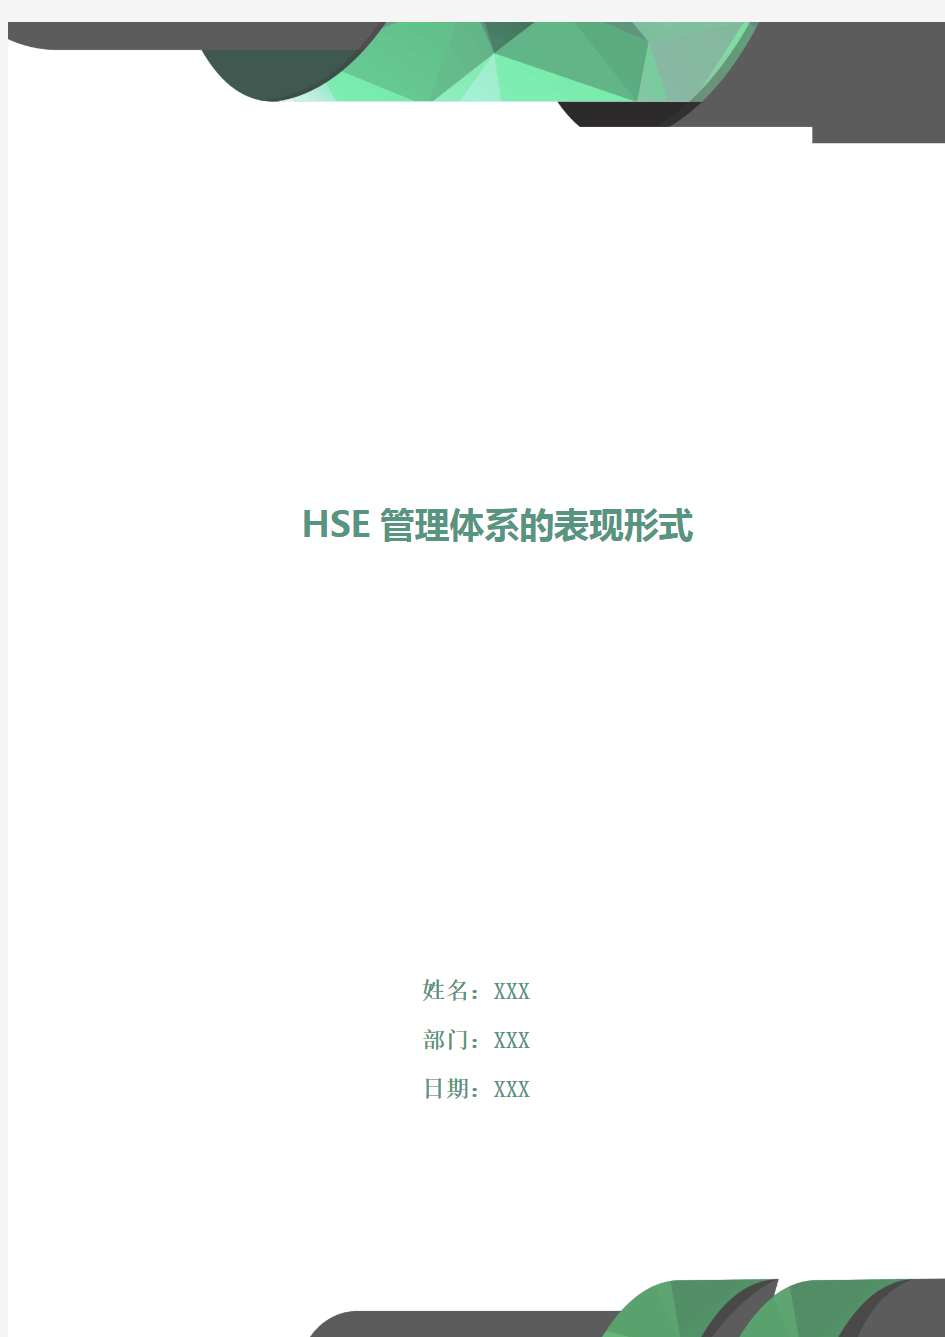 HSE管理体系的表现形式